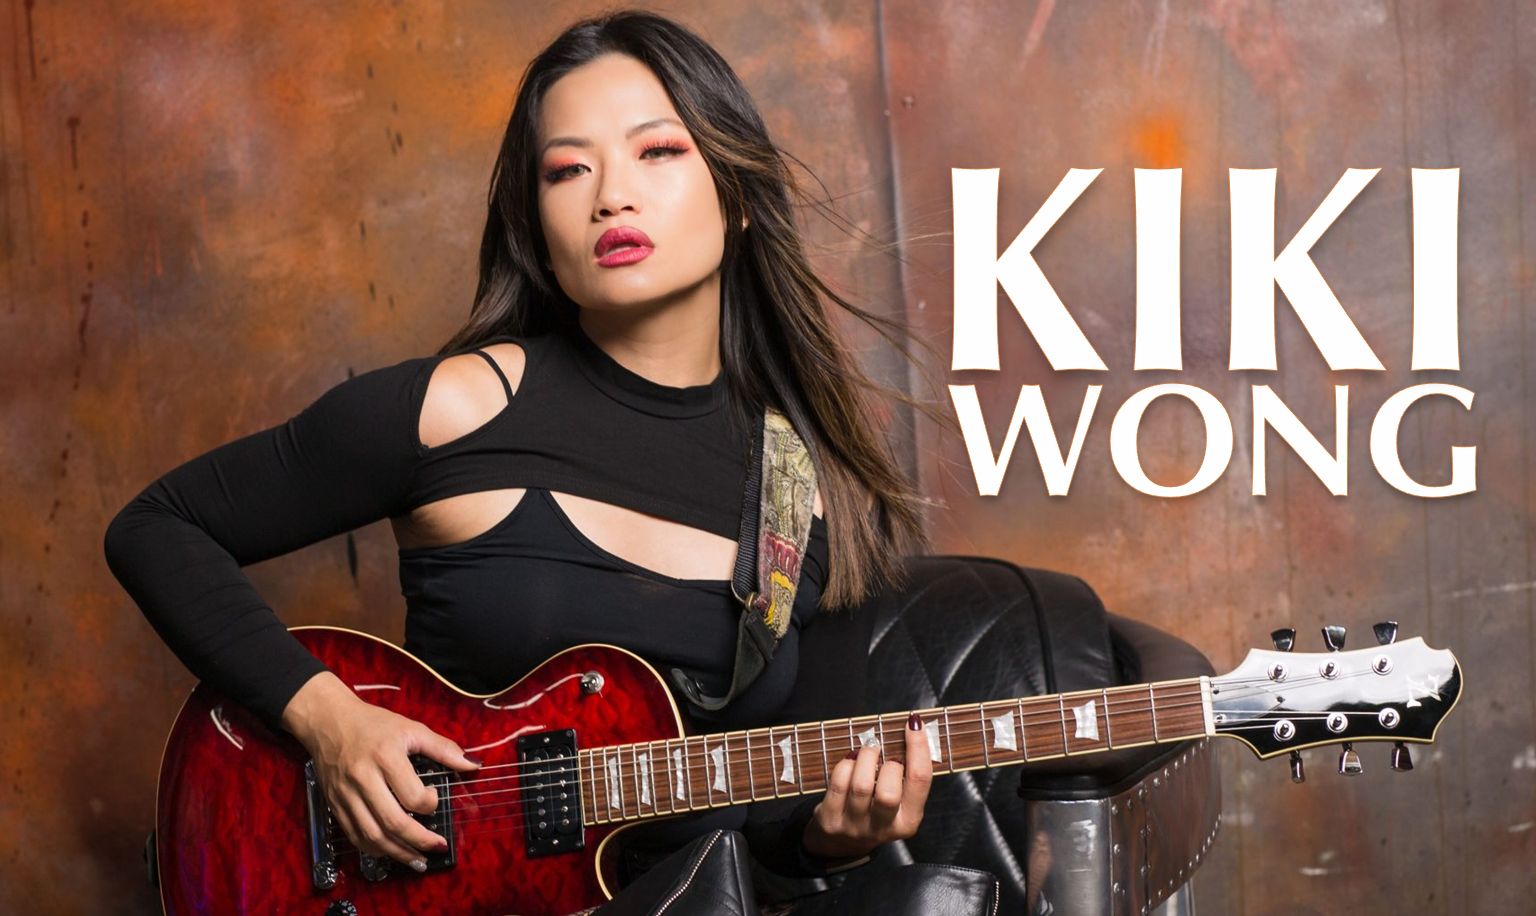 Kiki Wong guitar rocker muay thai model wongo